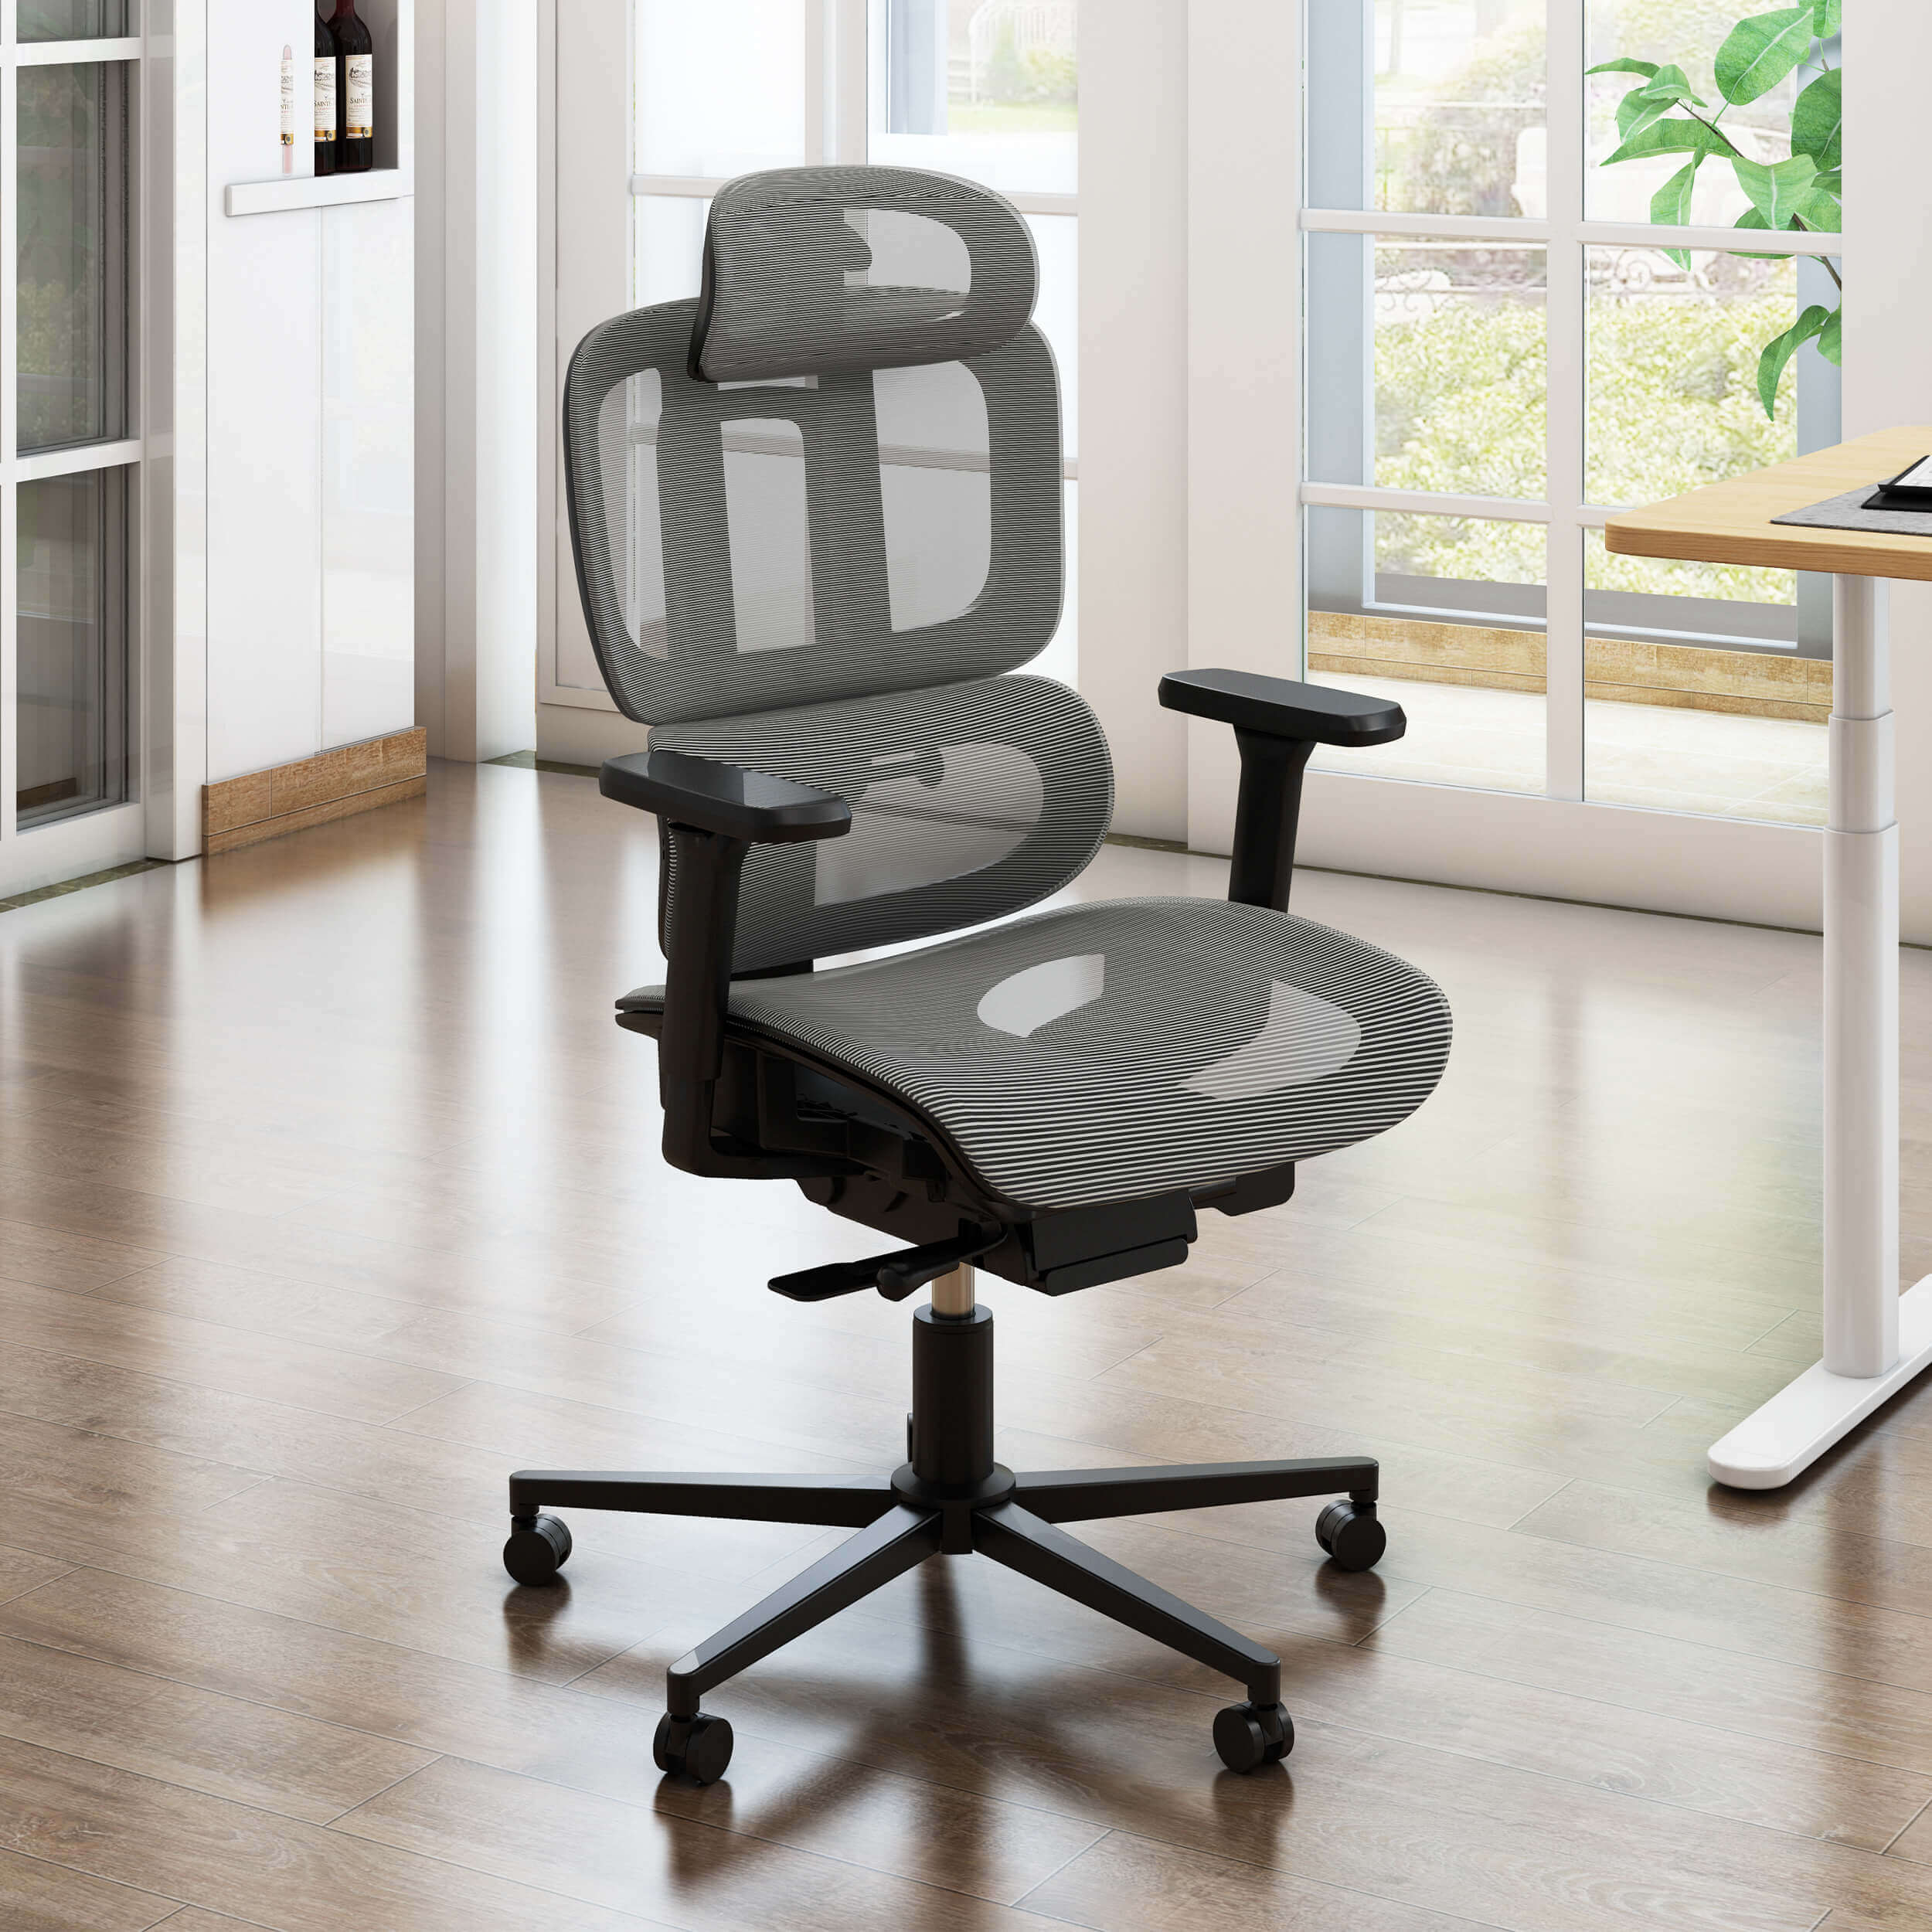 Chaise ergonomique - Scénario d'utilisation